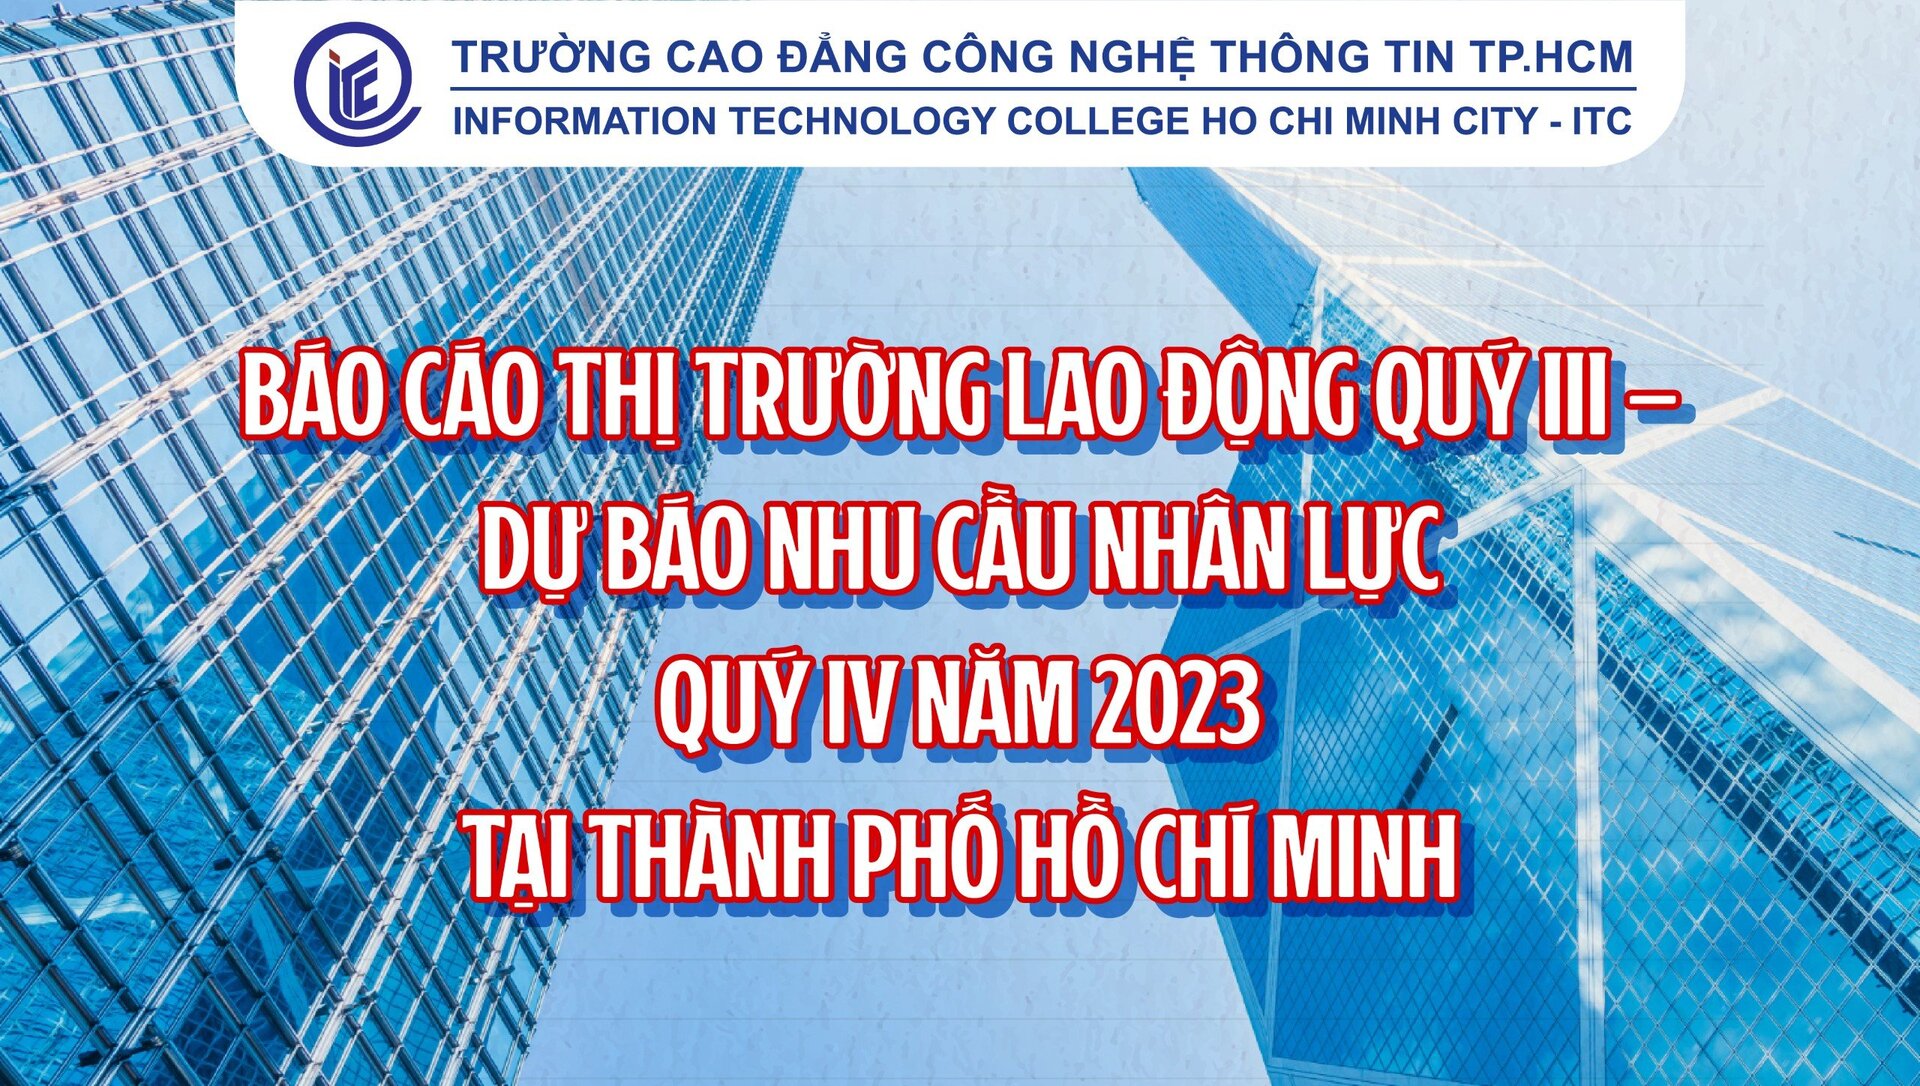 Báo cáo Thị trường lao động quý III – Dự báo nhu cầu nhân lực quý IV năm 2023 tại thành phố Hồ Chí Minh